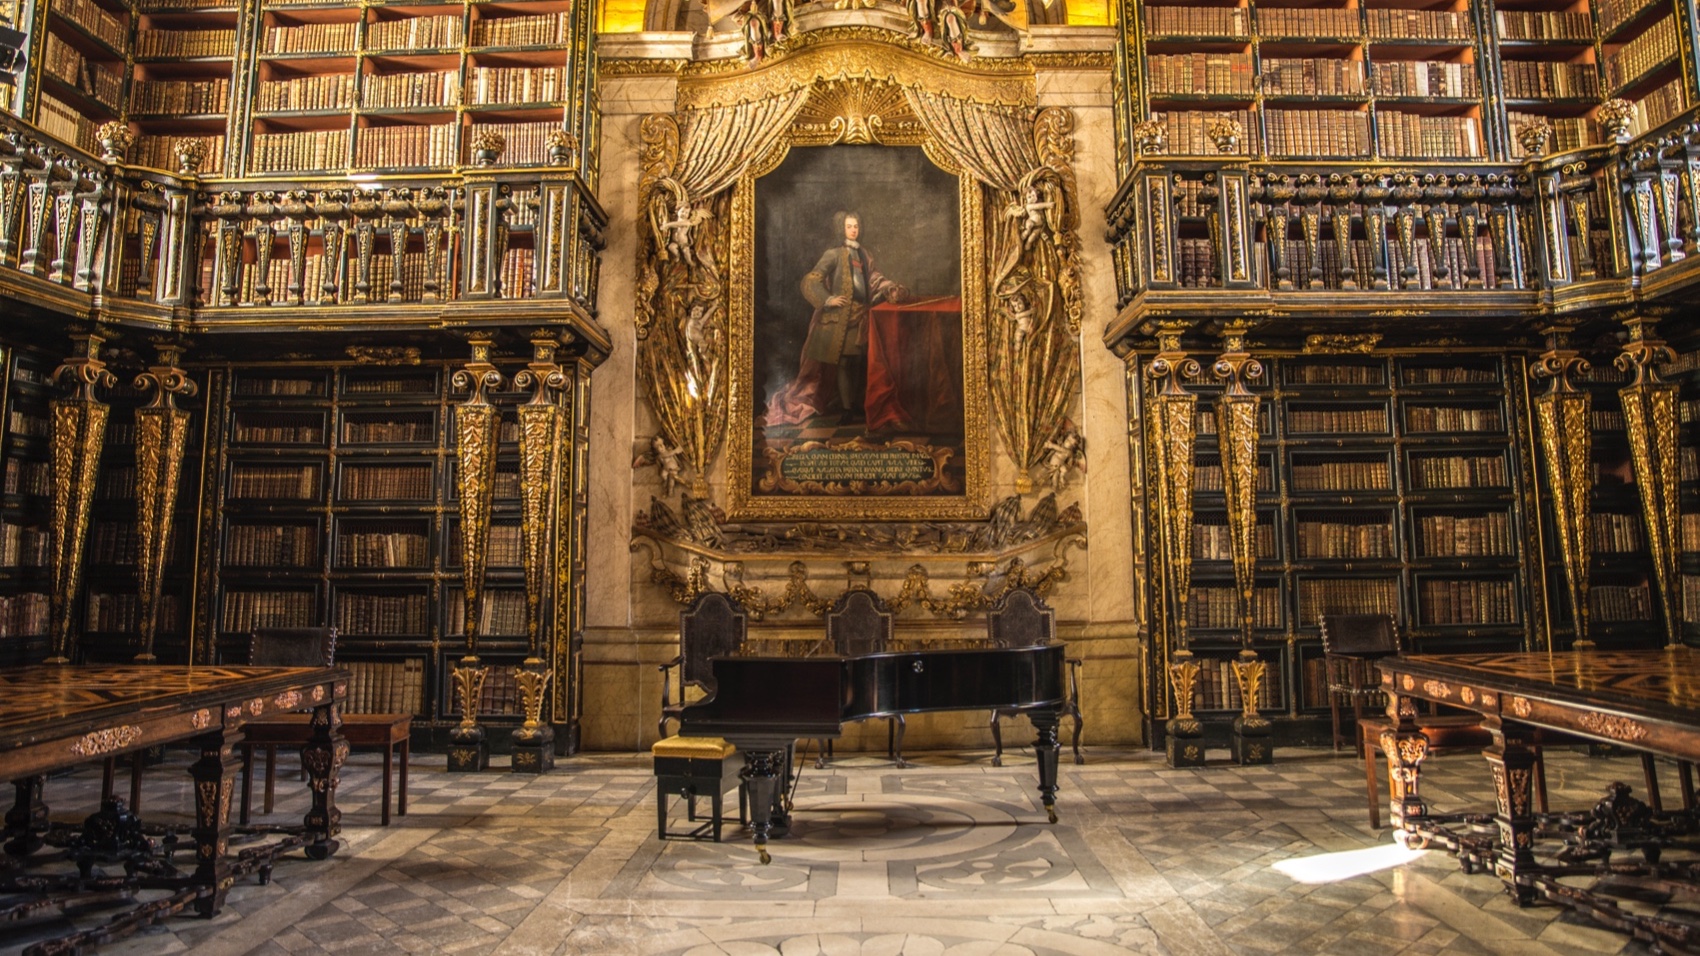 Turismo Centro de Portugal - Coimbra Historical City Tour library